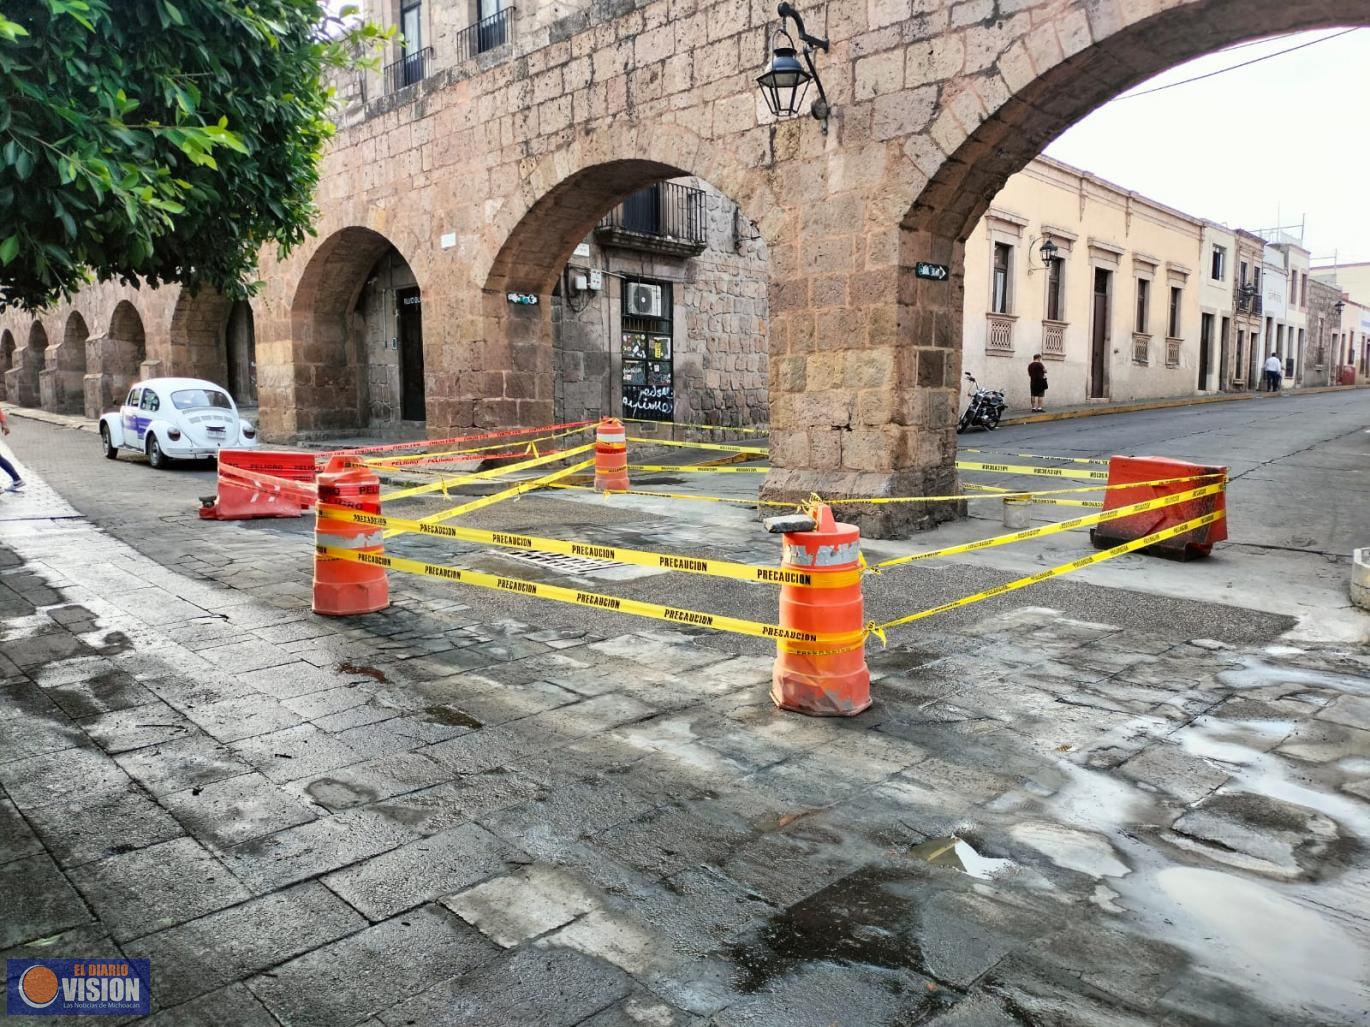 Emite ayuntamiento de Morelia alerta Vial por cierre temporal de calle Valladolid